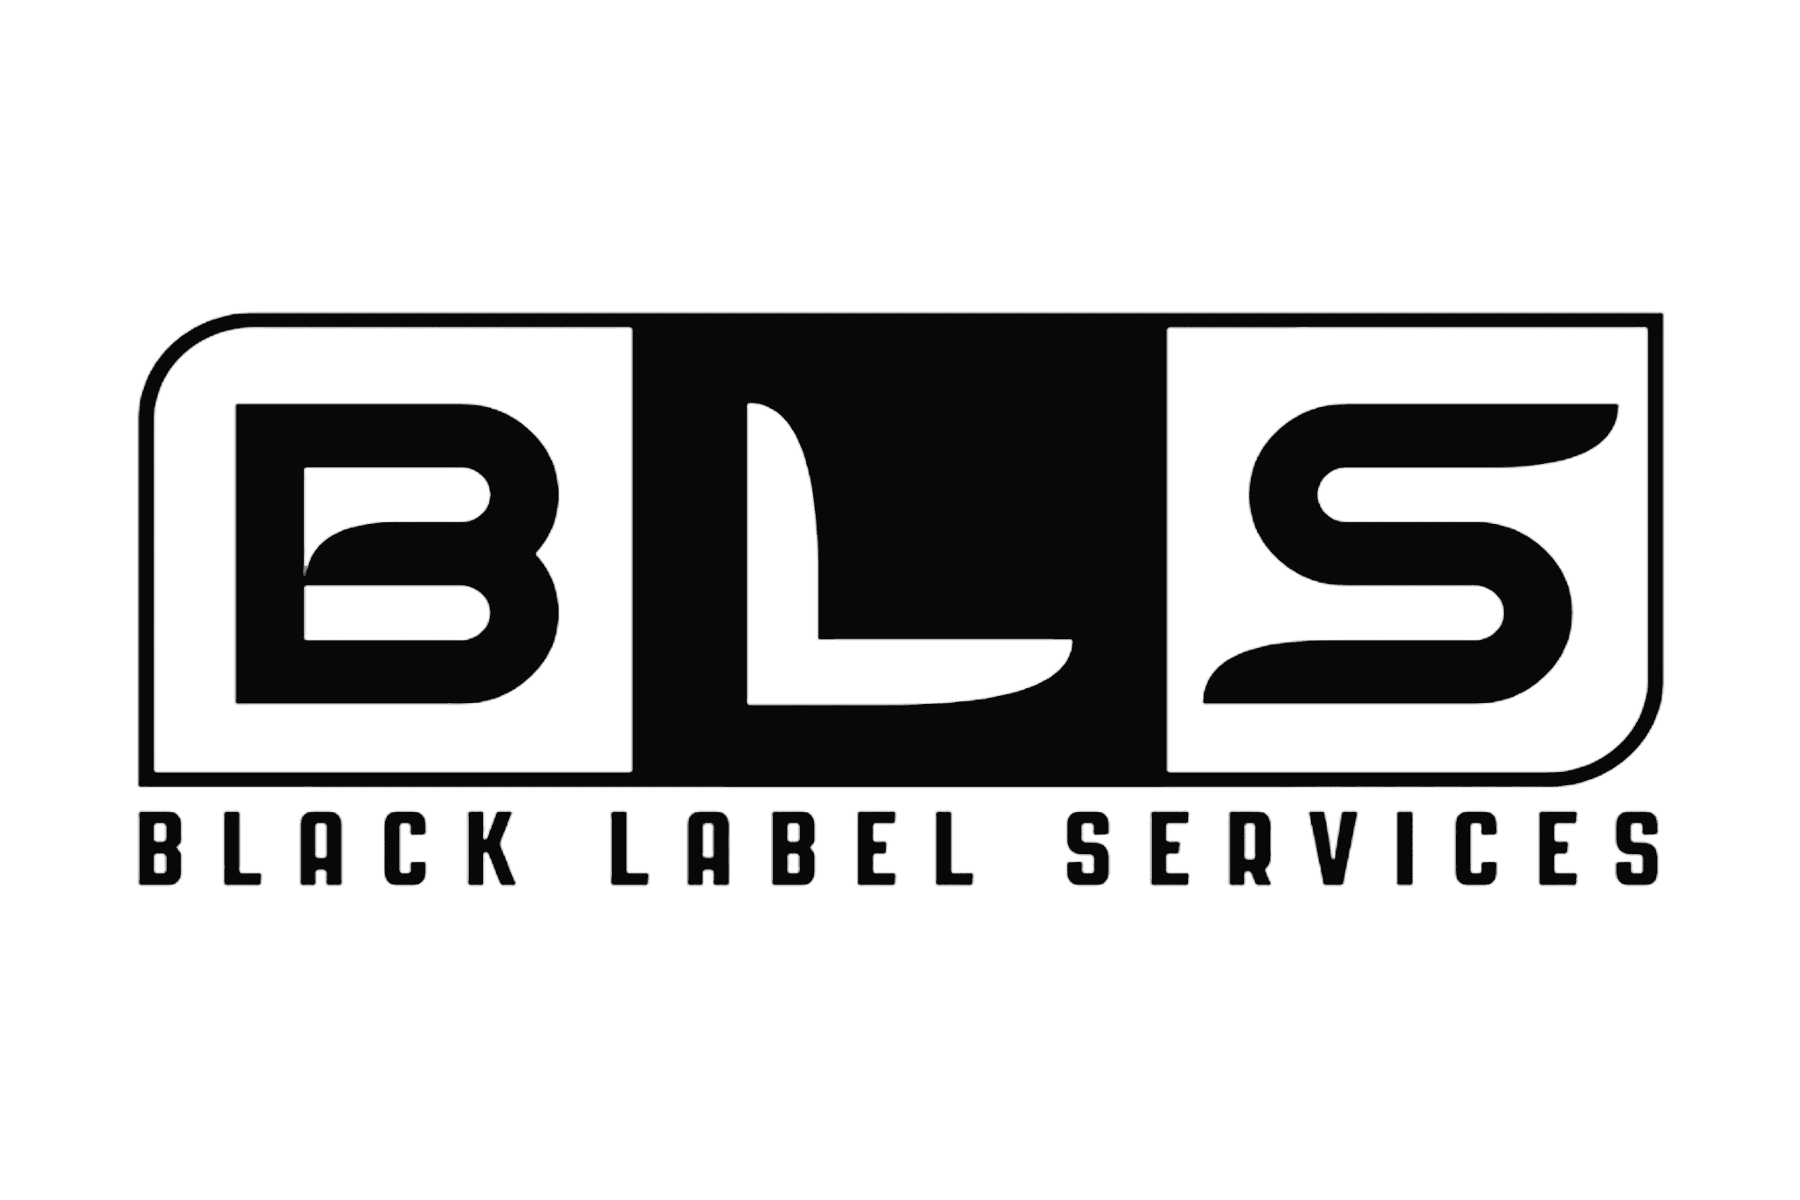 Black Label Services